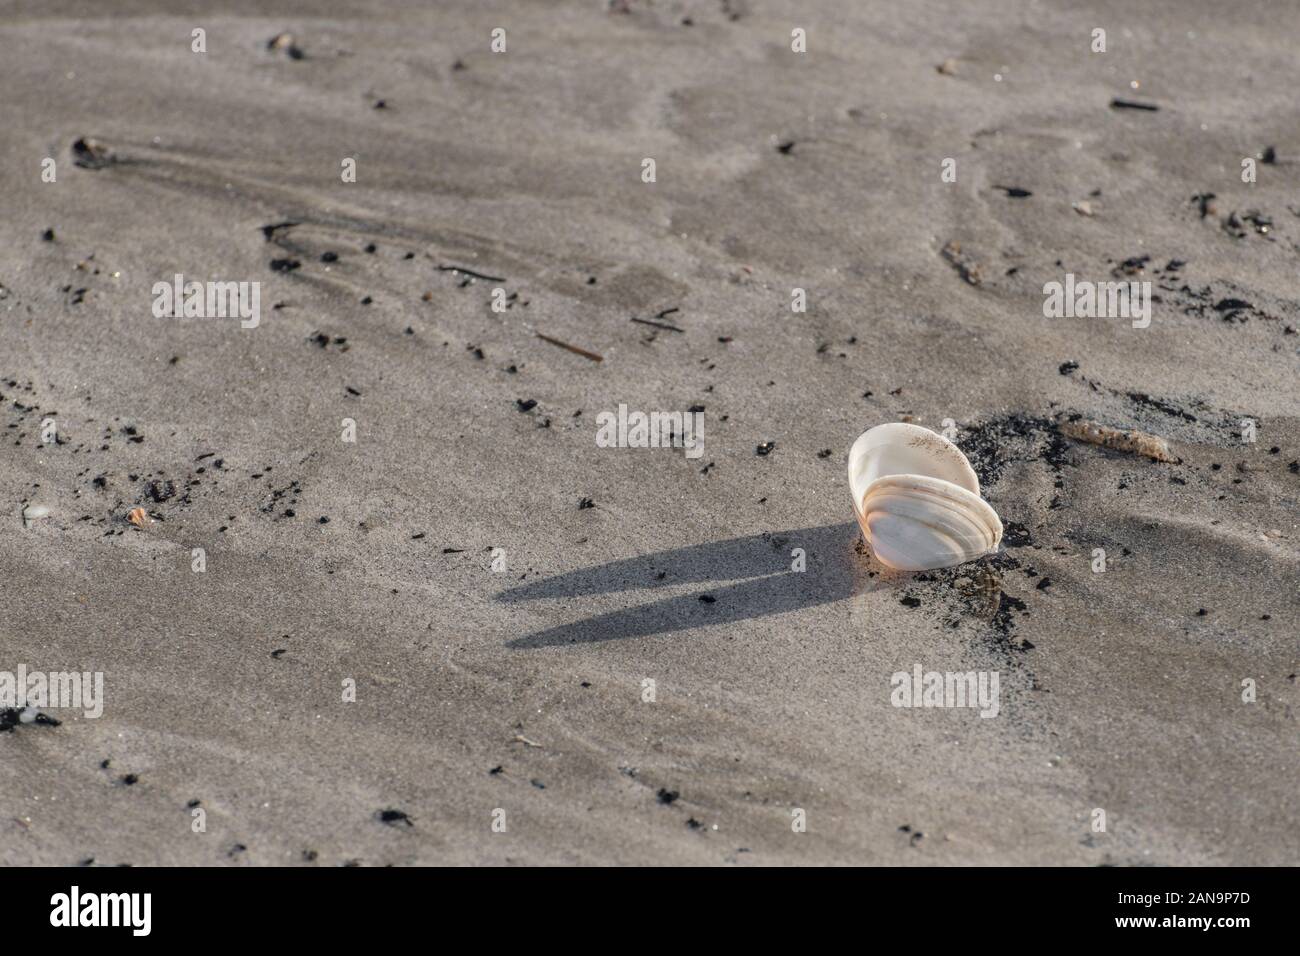 Mollusque coquillage s'est échoué sur une plage de sable à Cornwall. Shell isolés, l'isolement, l'isolement, tout seul, sur lonesome, étude de conchyliologie. Banque D'Images